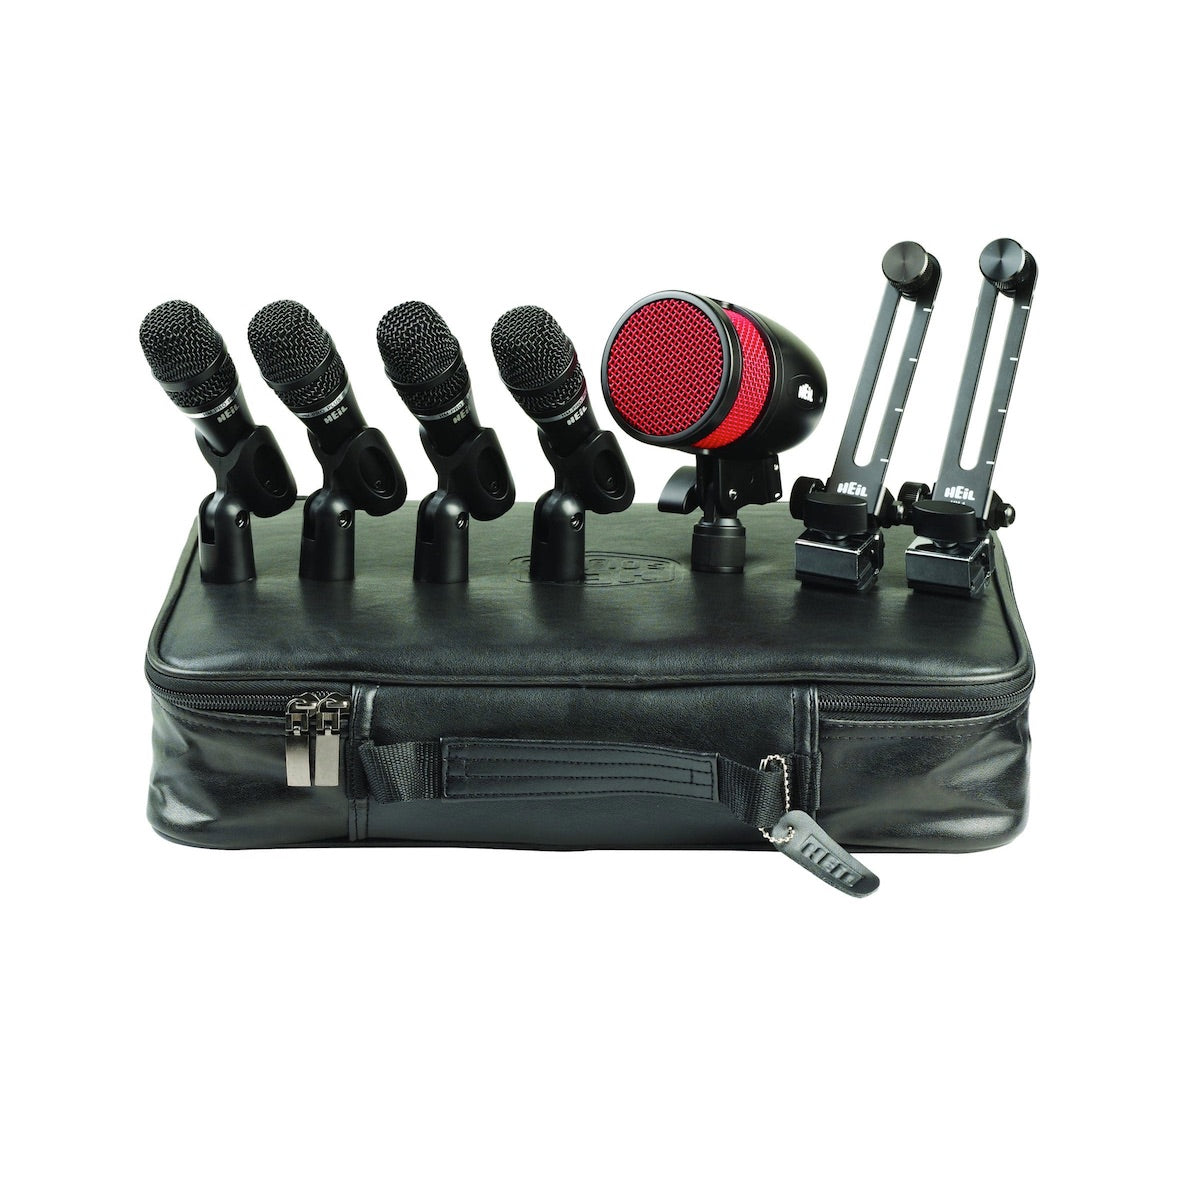 Heil HDK5 Professional Drum Microphone Kit